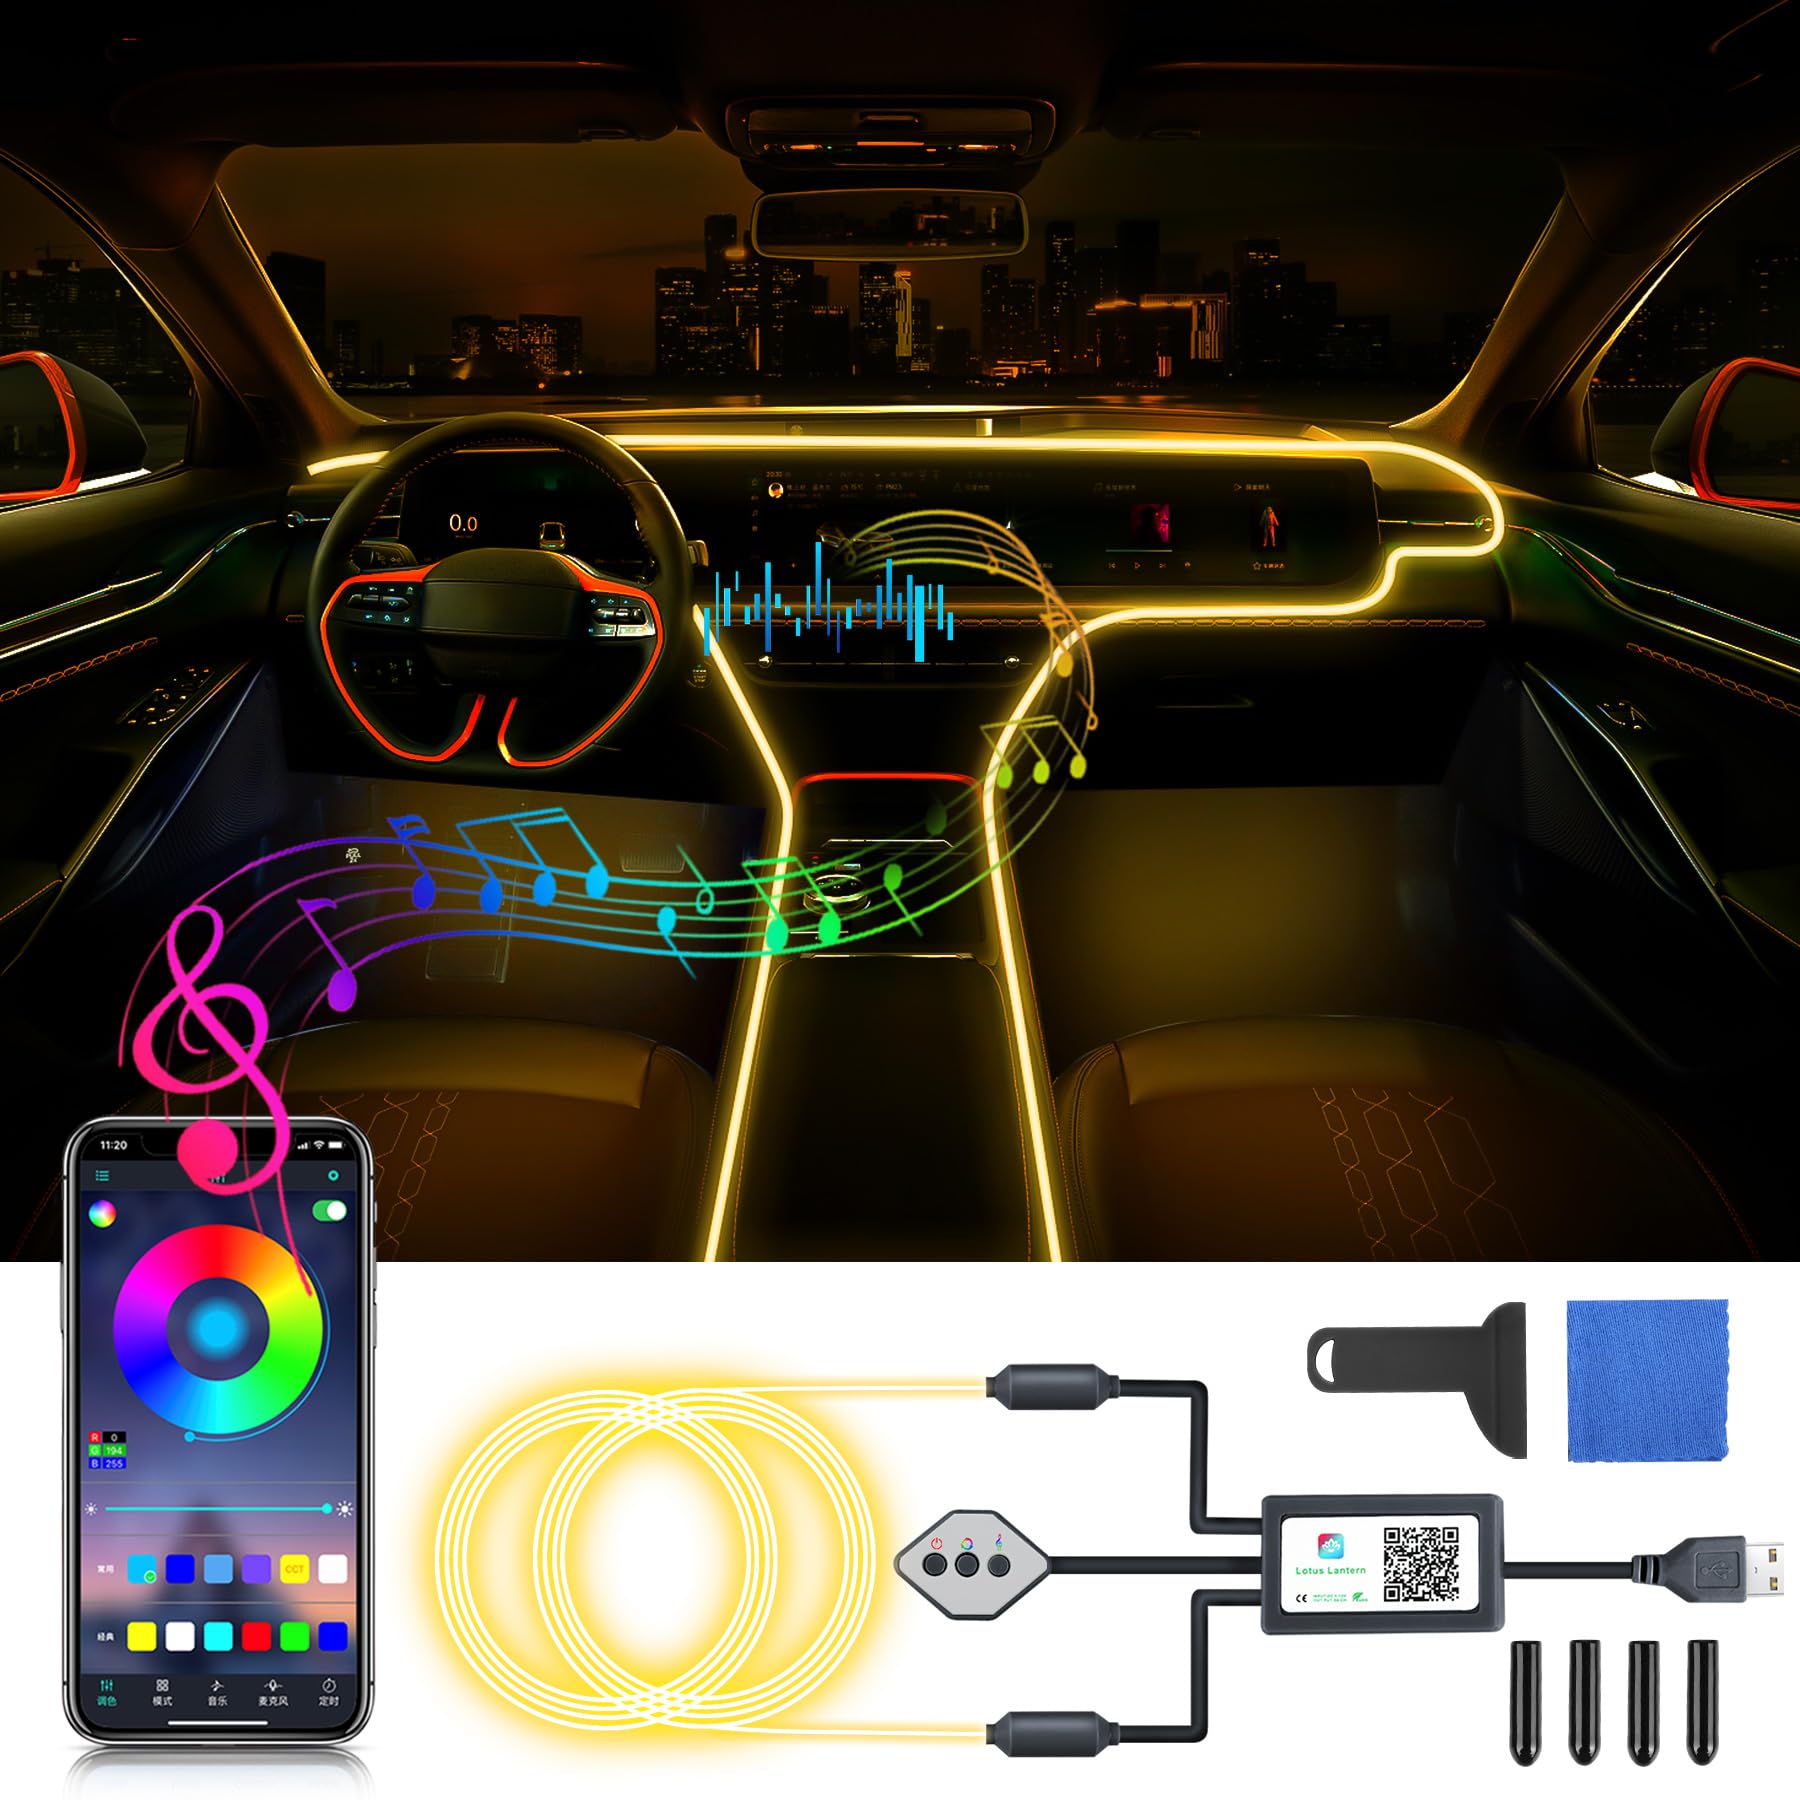 OMECO USB Ambientebeleuchtung Auto LED Innenbeleuchtung 4m 5050 RGB mit APP und Kontroller 5V LED Streifen innenbeleuchtung atmosphärenlicht wasserdichte Musiklichtleiste Steuerbare LED Strip Neon von OMECO